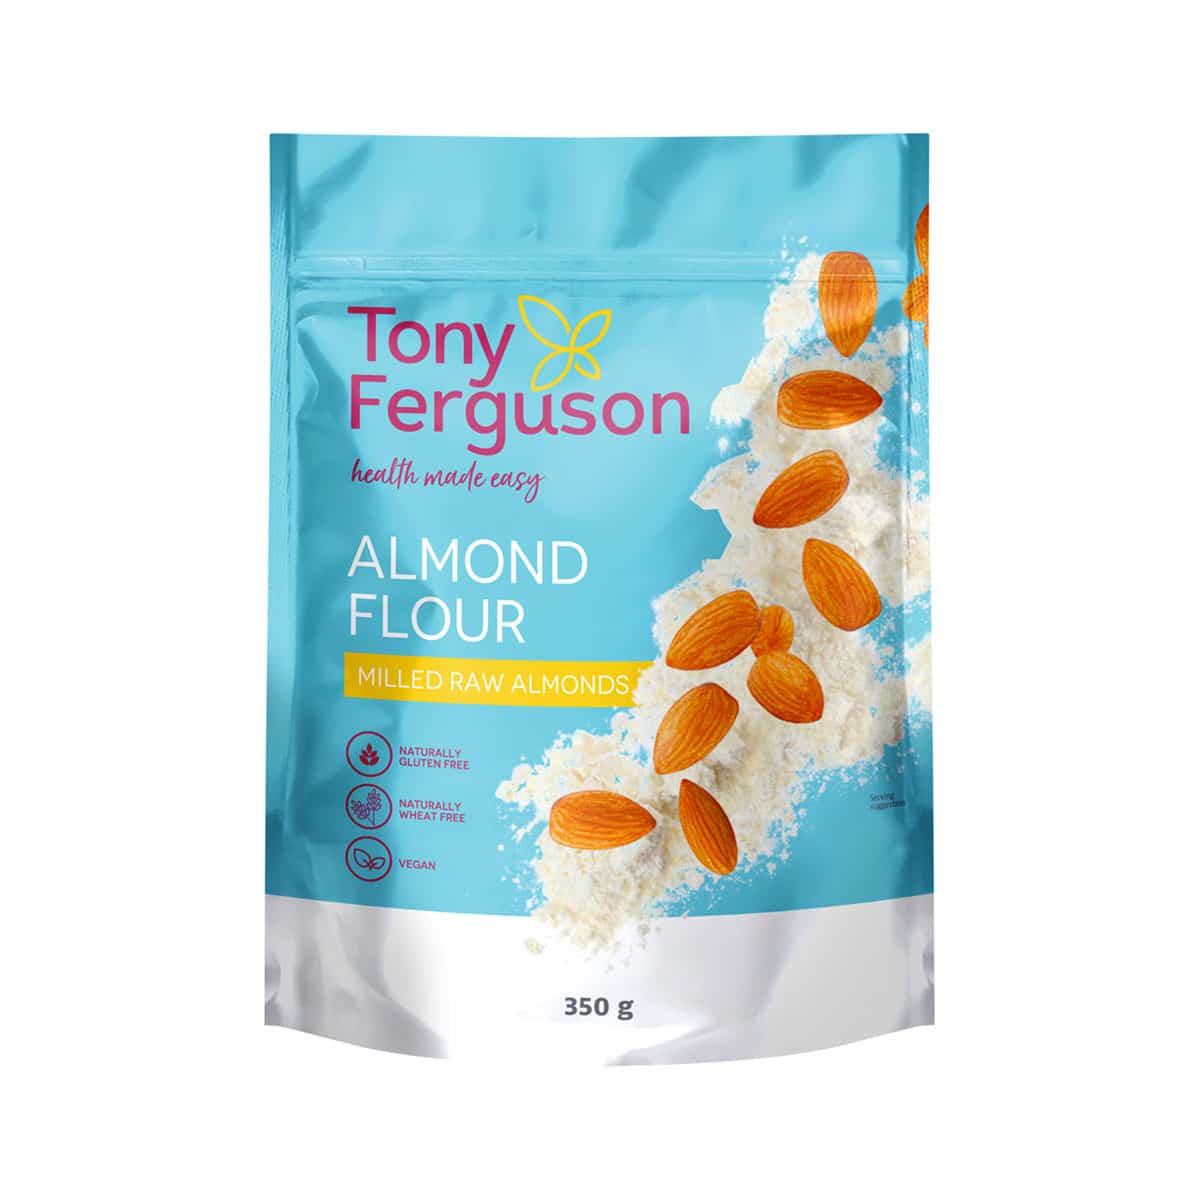 Tony Ferguson Almond Flour - 350g